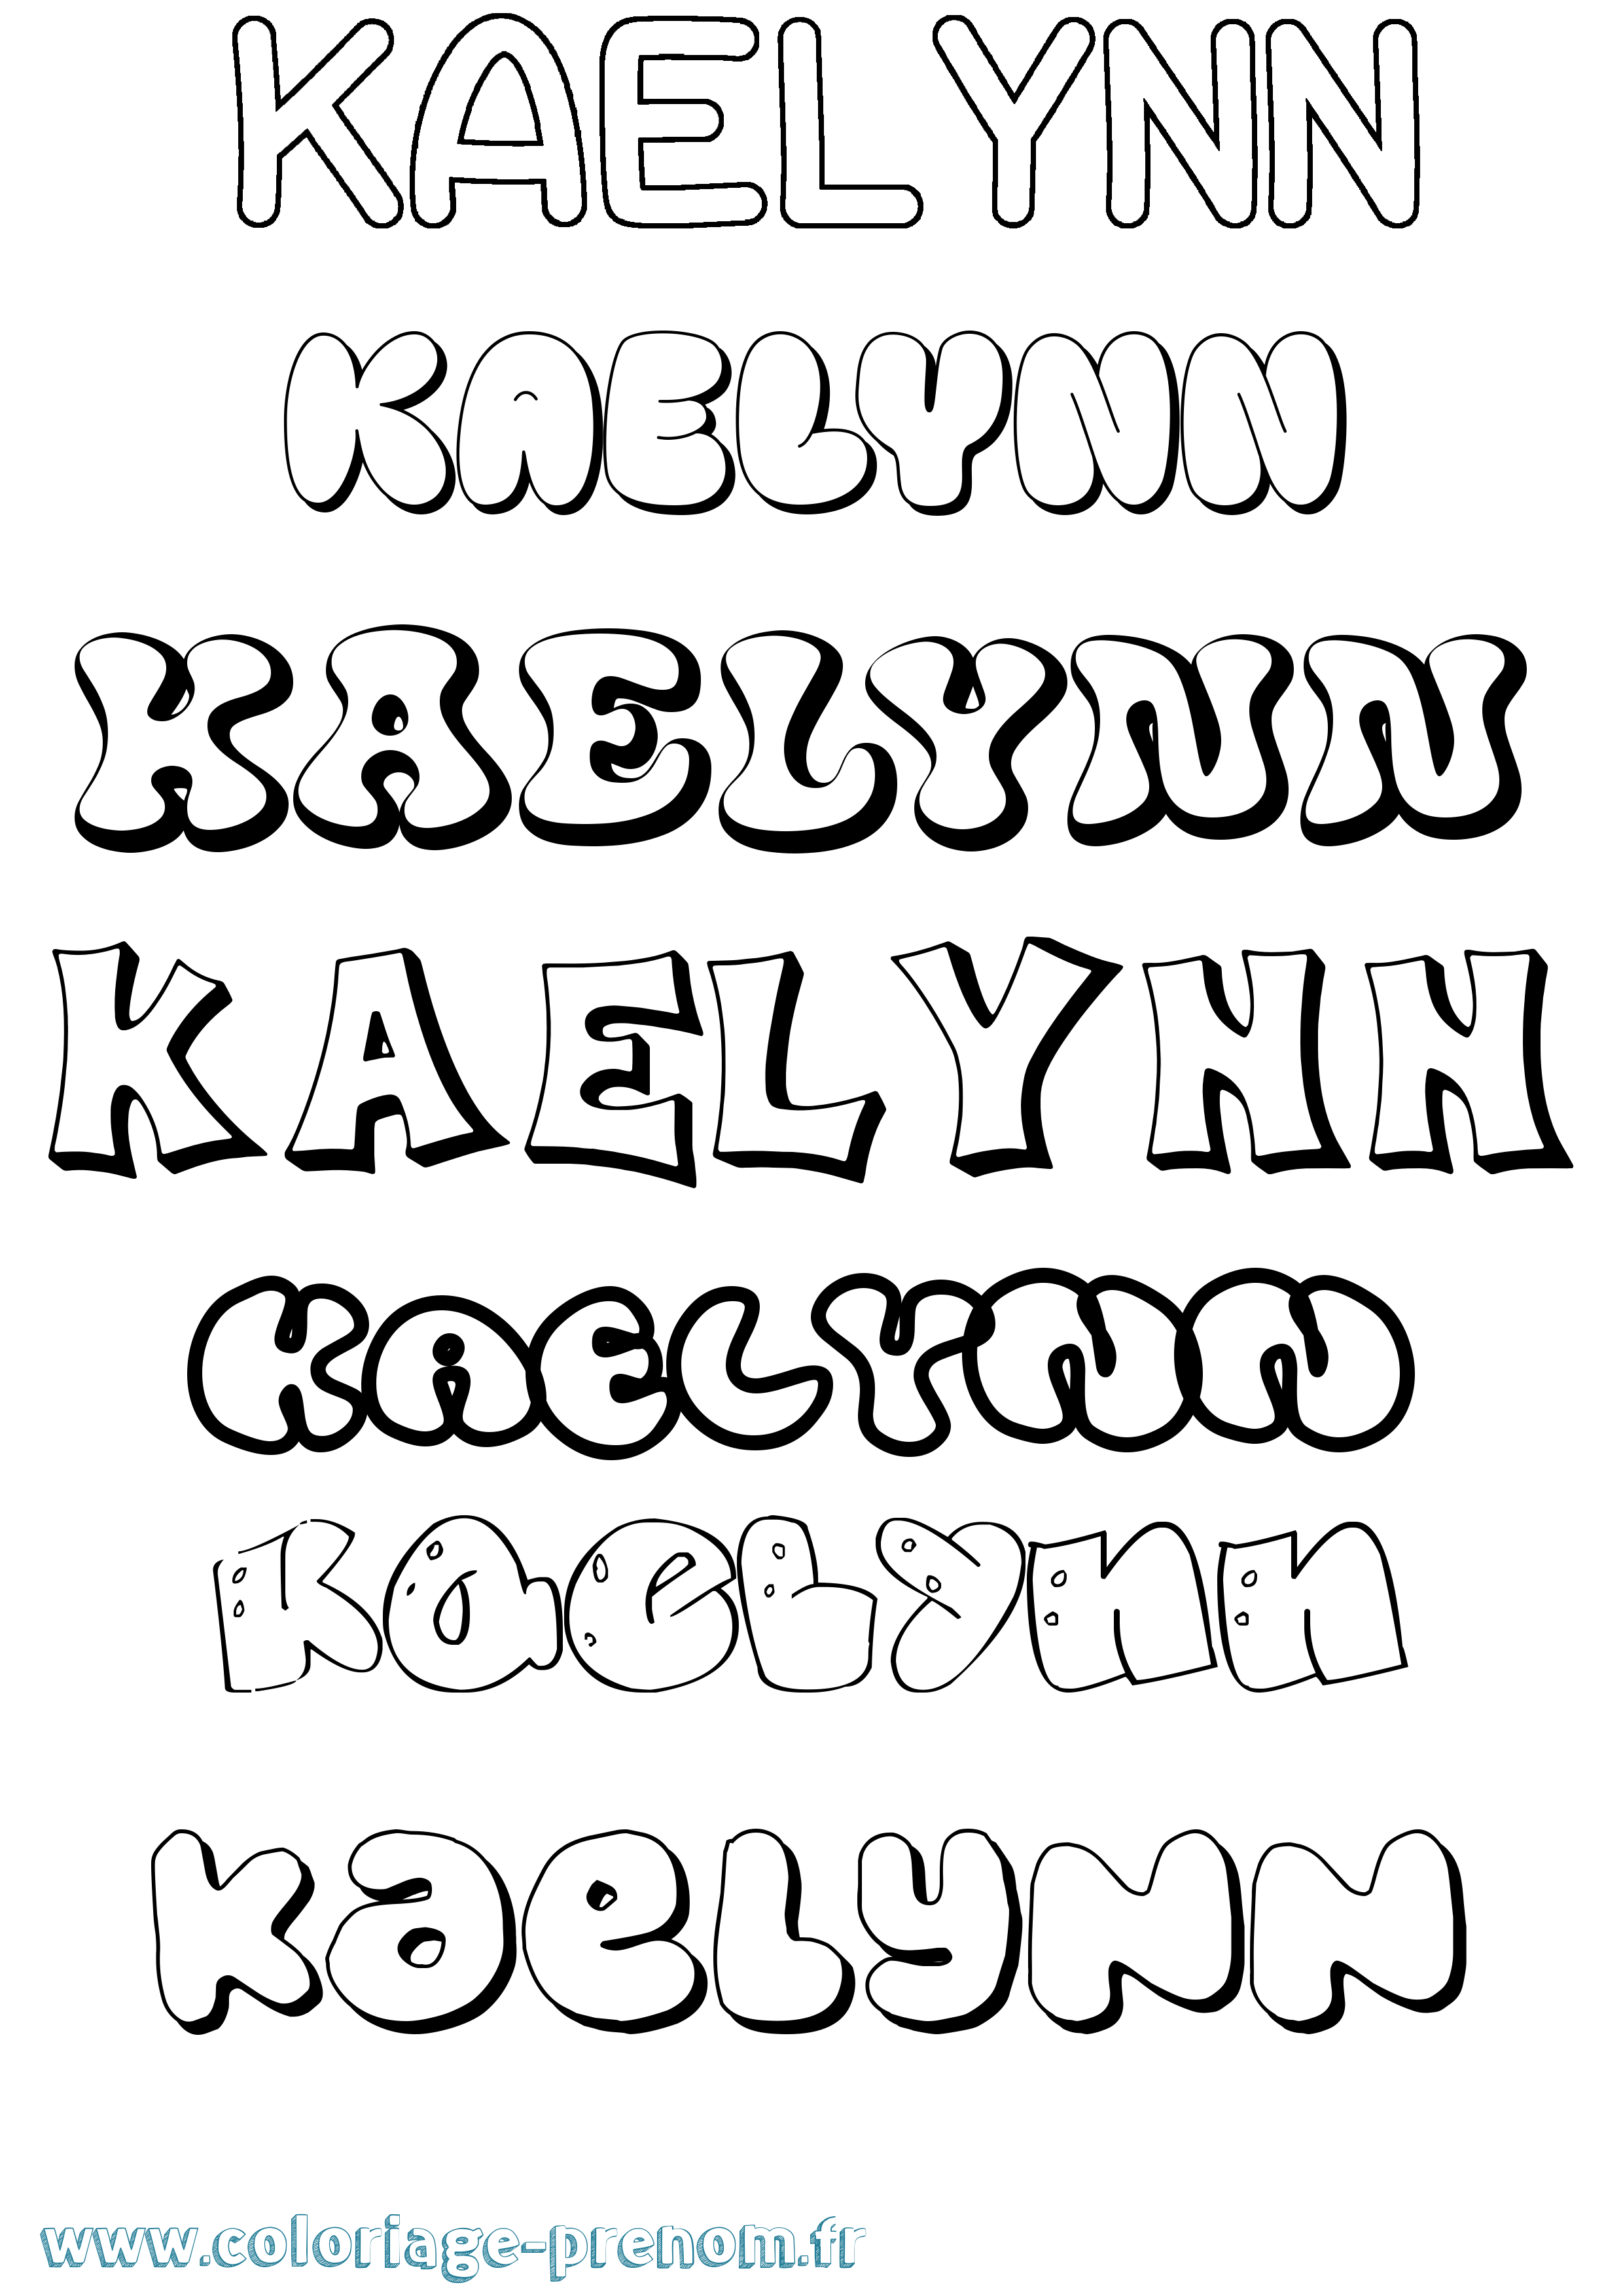 Coloriage prénom Kaelynn Bubble